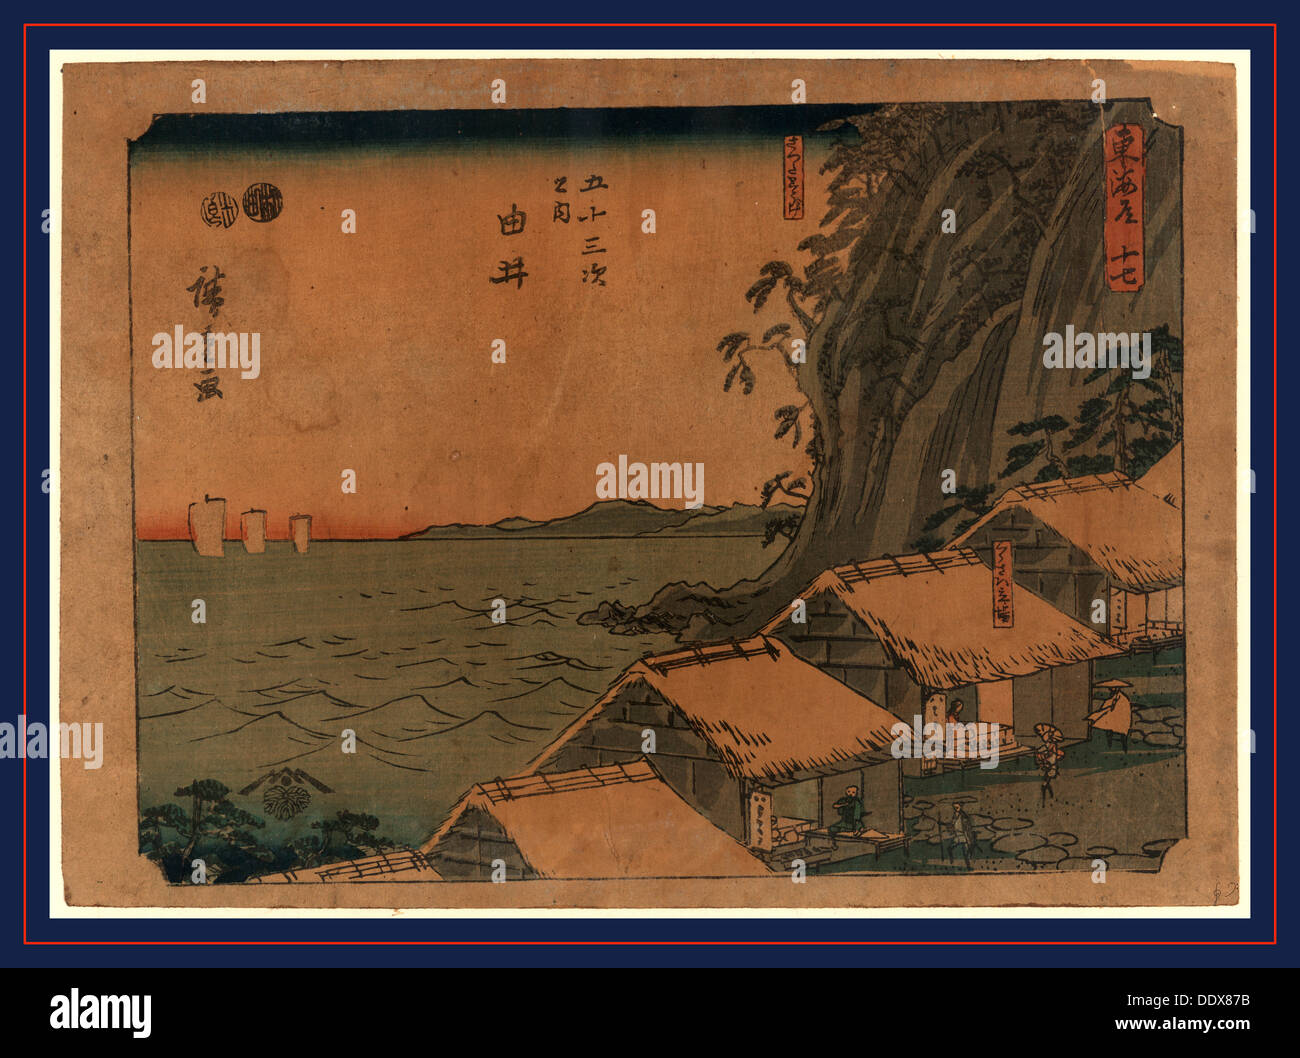 Yui, Ando [entre 1848 et 1854], 1 tirage : gravure sur bois, couleur ; 18,4 x 25,7 cm, impression a des bâtiments au toit de chaume sur la côte Banque D'Images